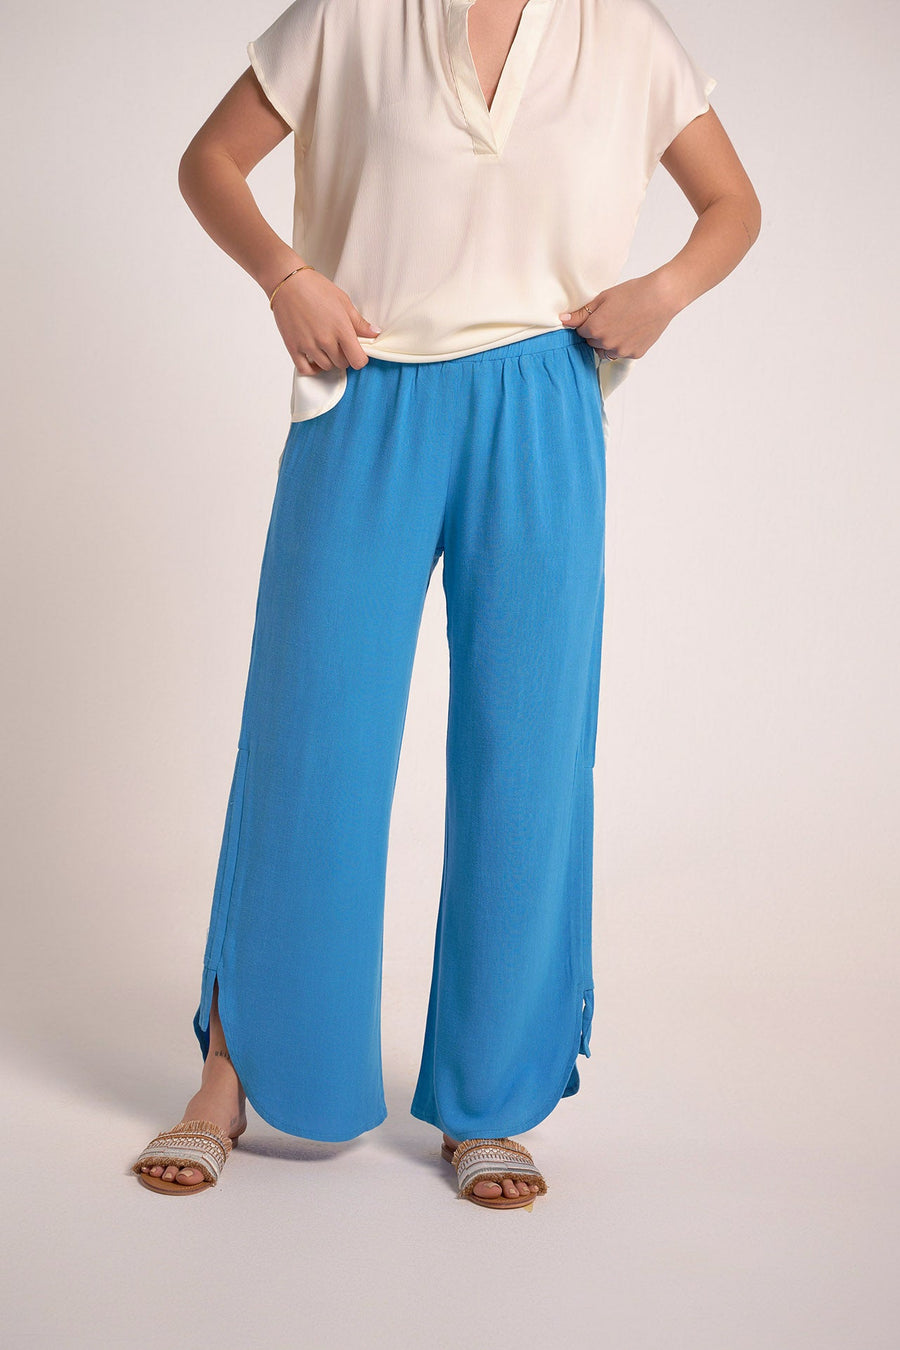 Blue Side Drawstrings pants - nahlaelalfydesigns